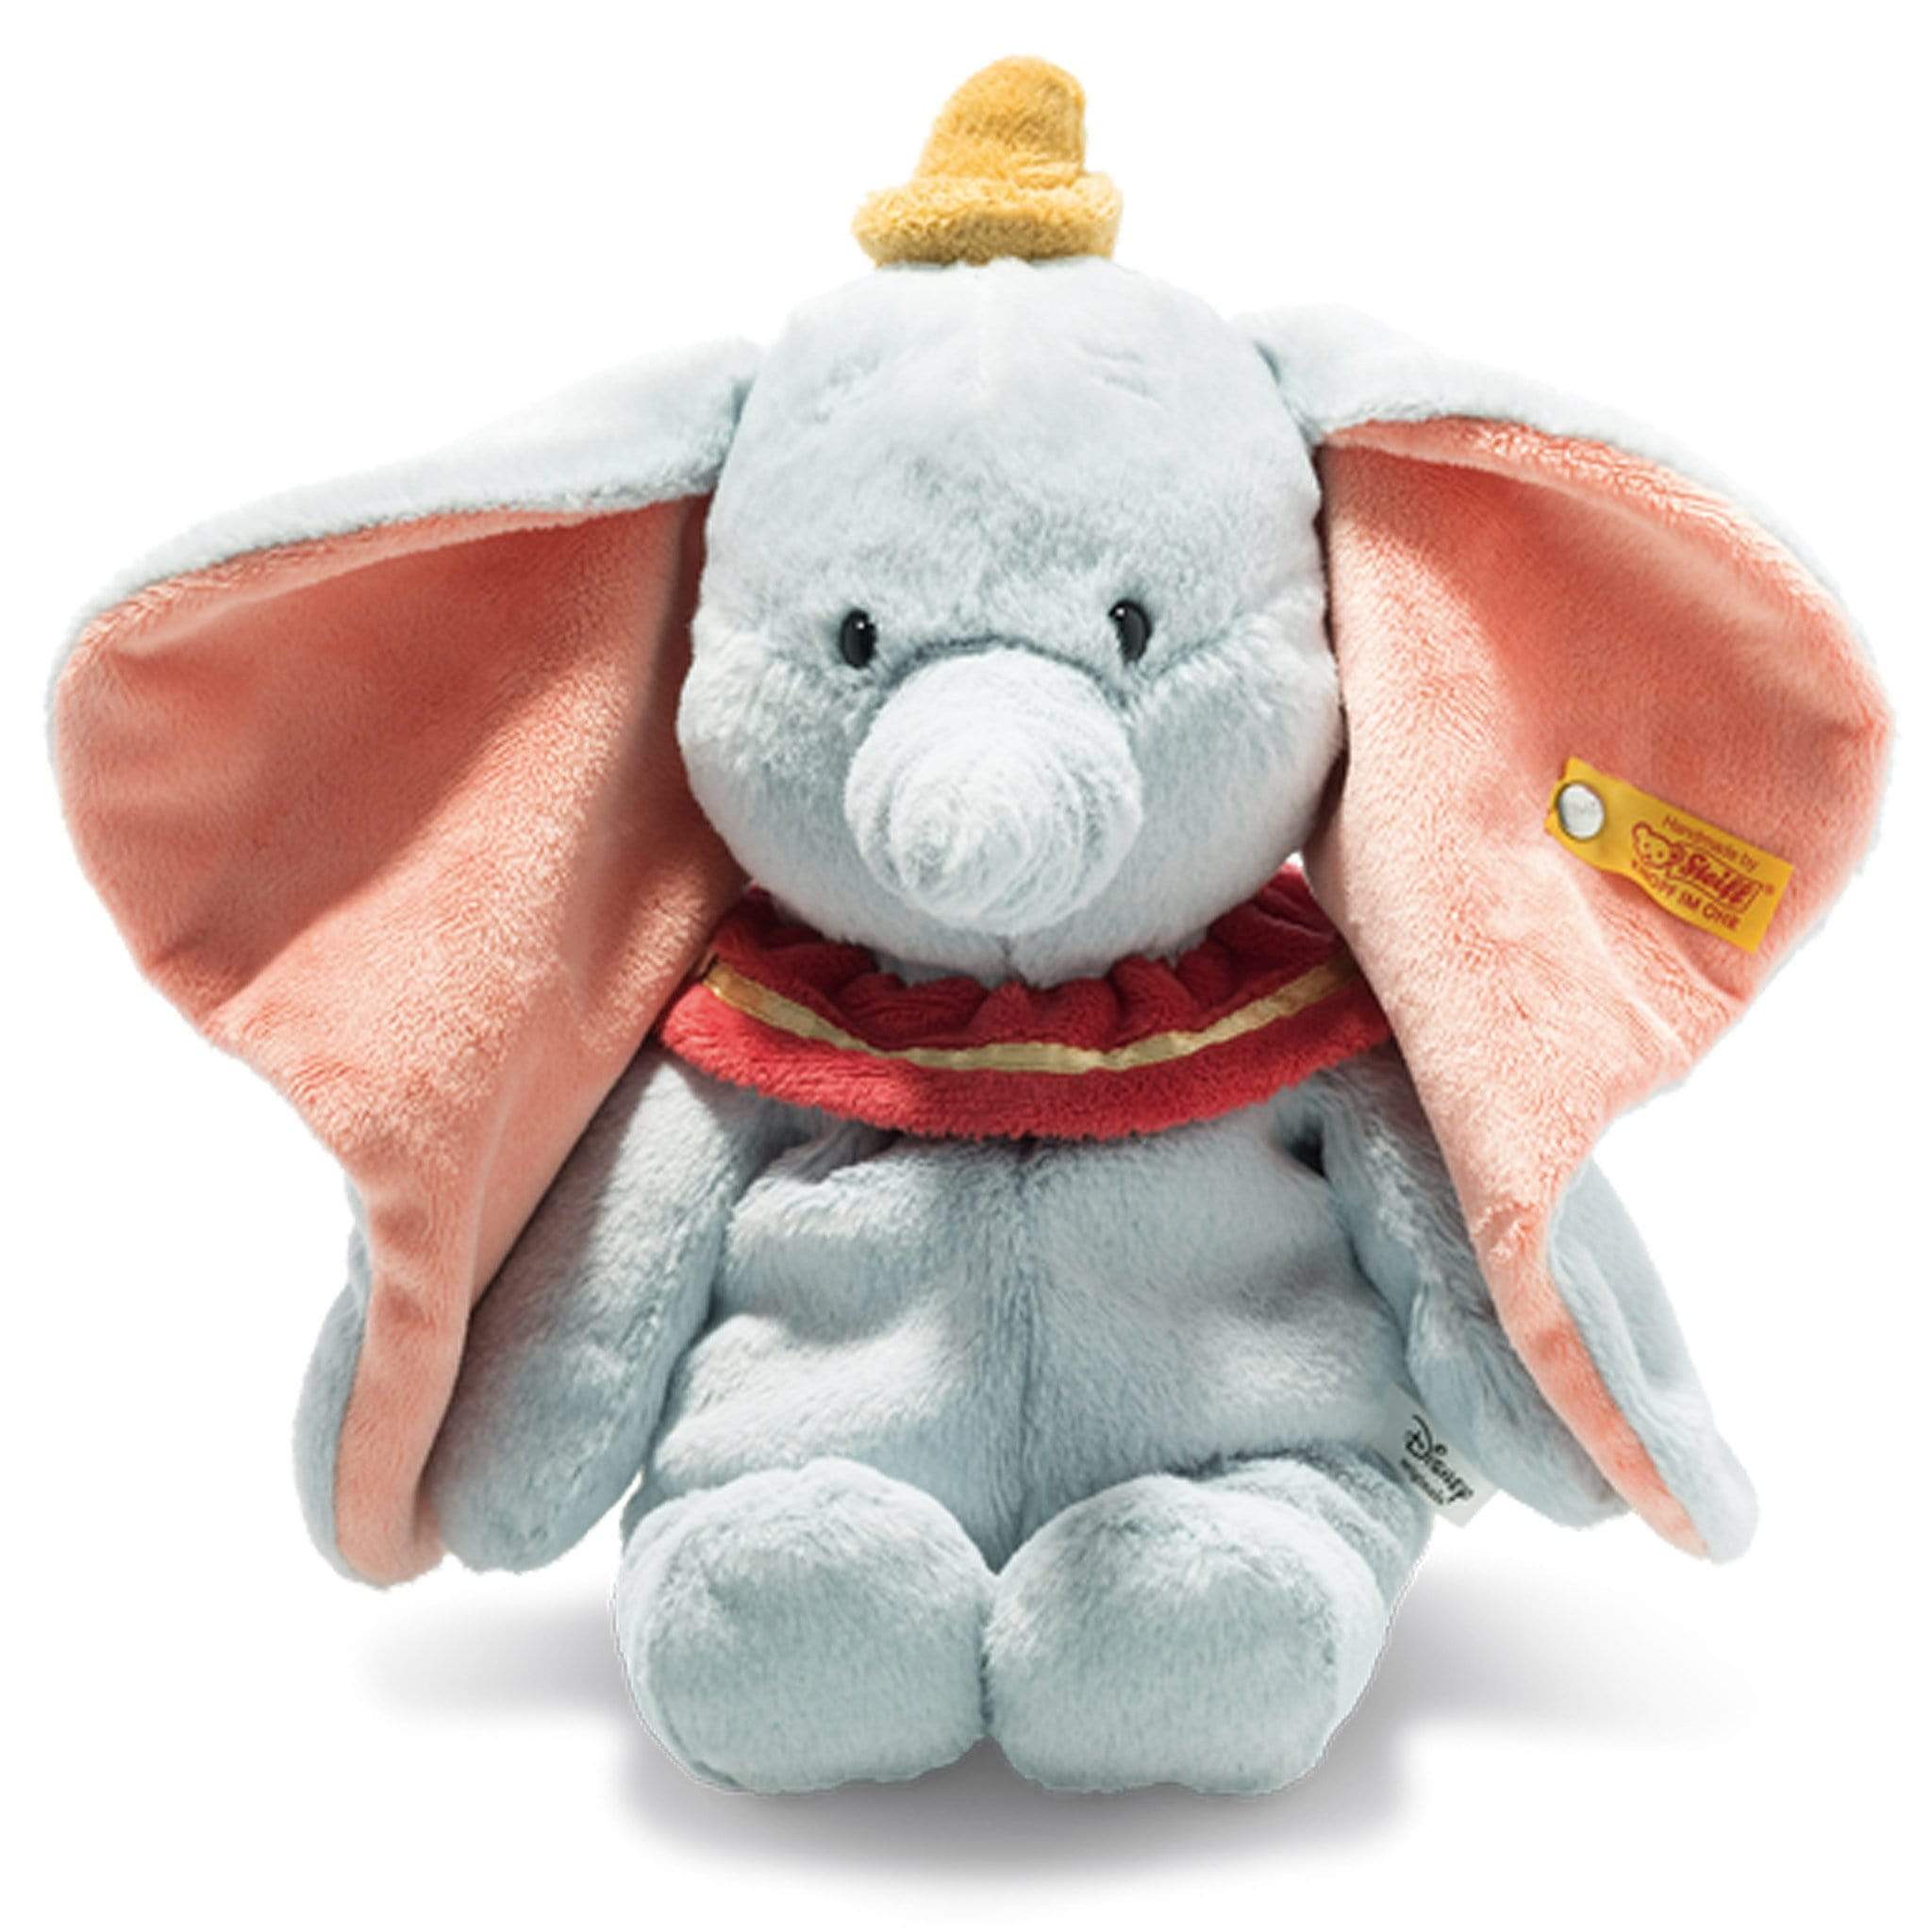 Steiff Dumbo the Elephant 30cm Teddy Bears 024559 4001505024559